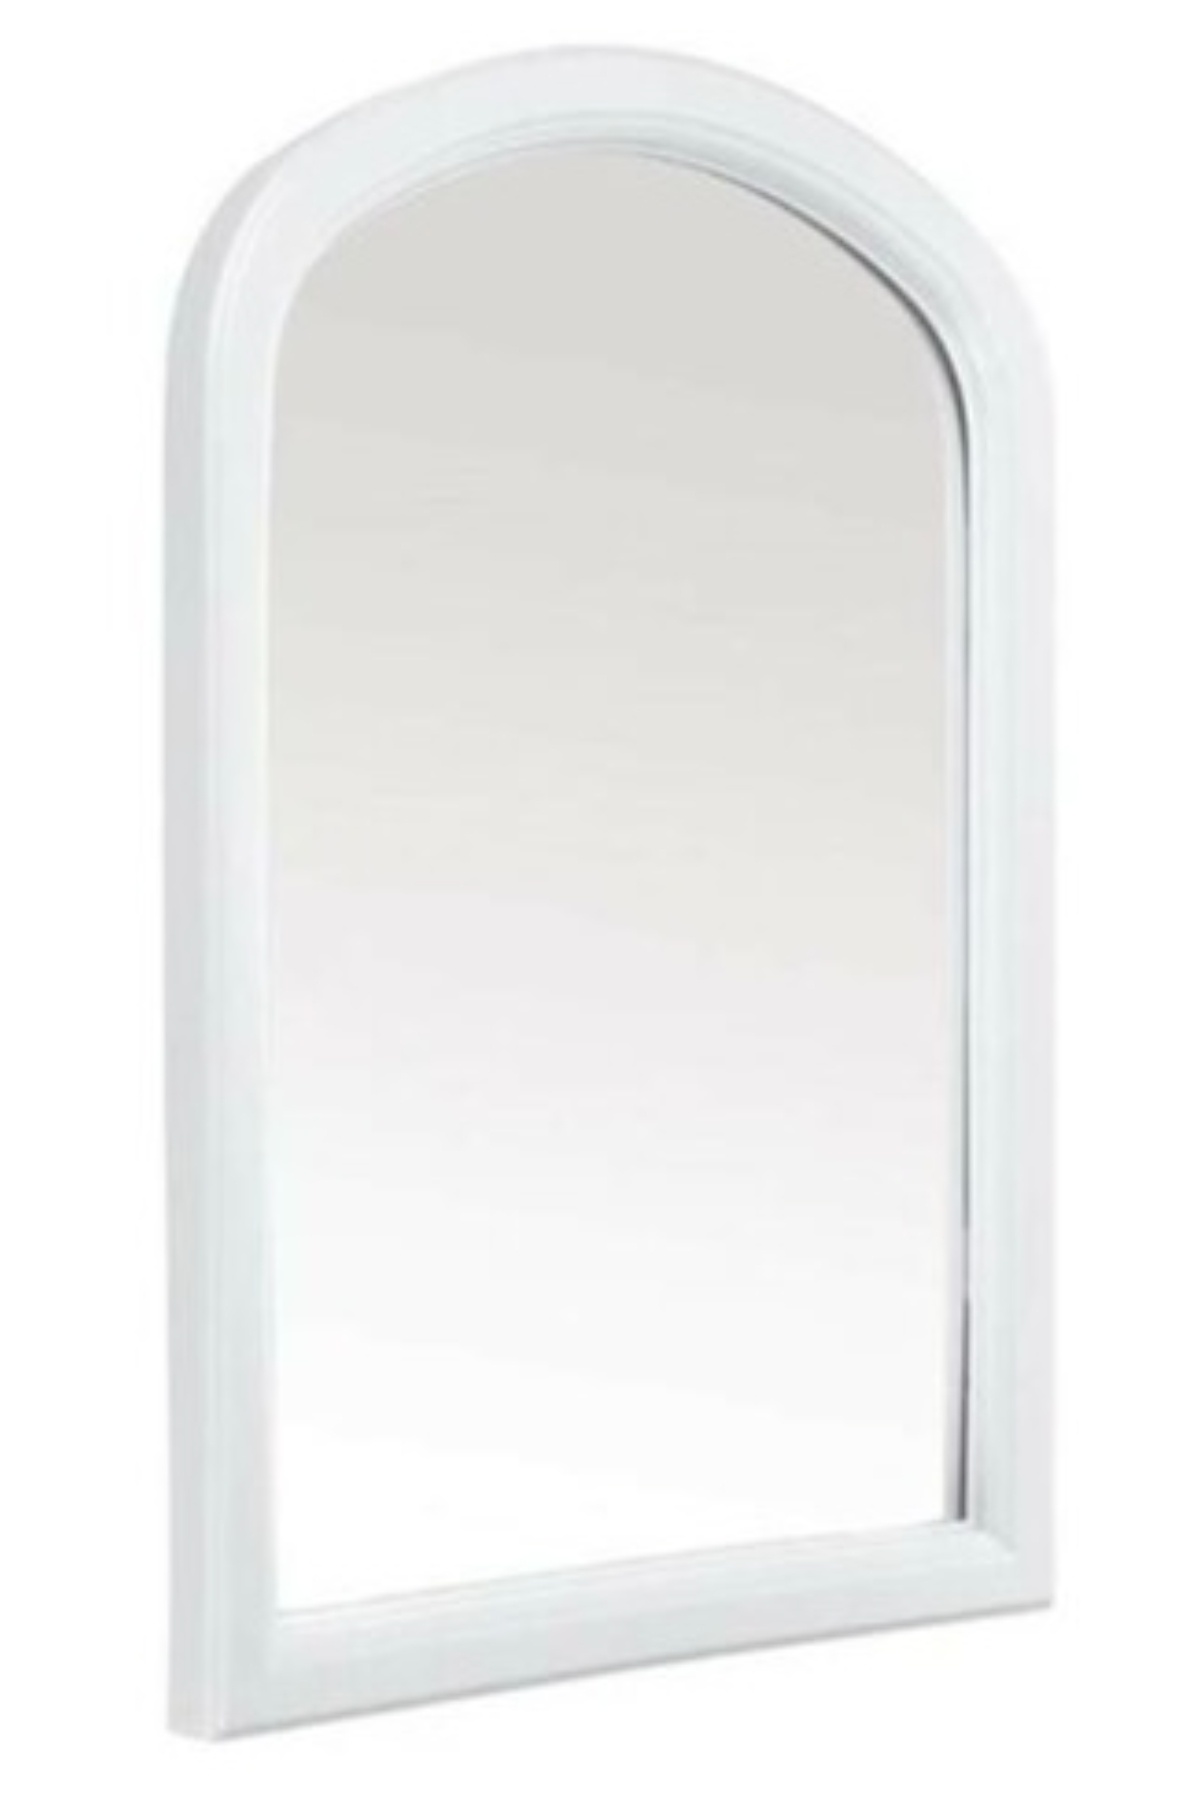 Çelik Ayna-671 Beyaz Mini Tek Ayna*10 - 17-0062 - 2345